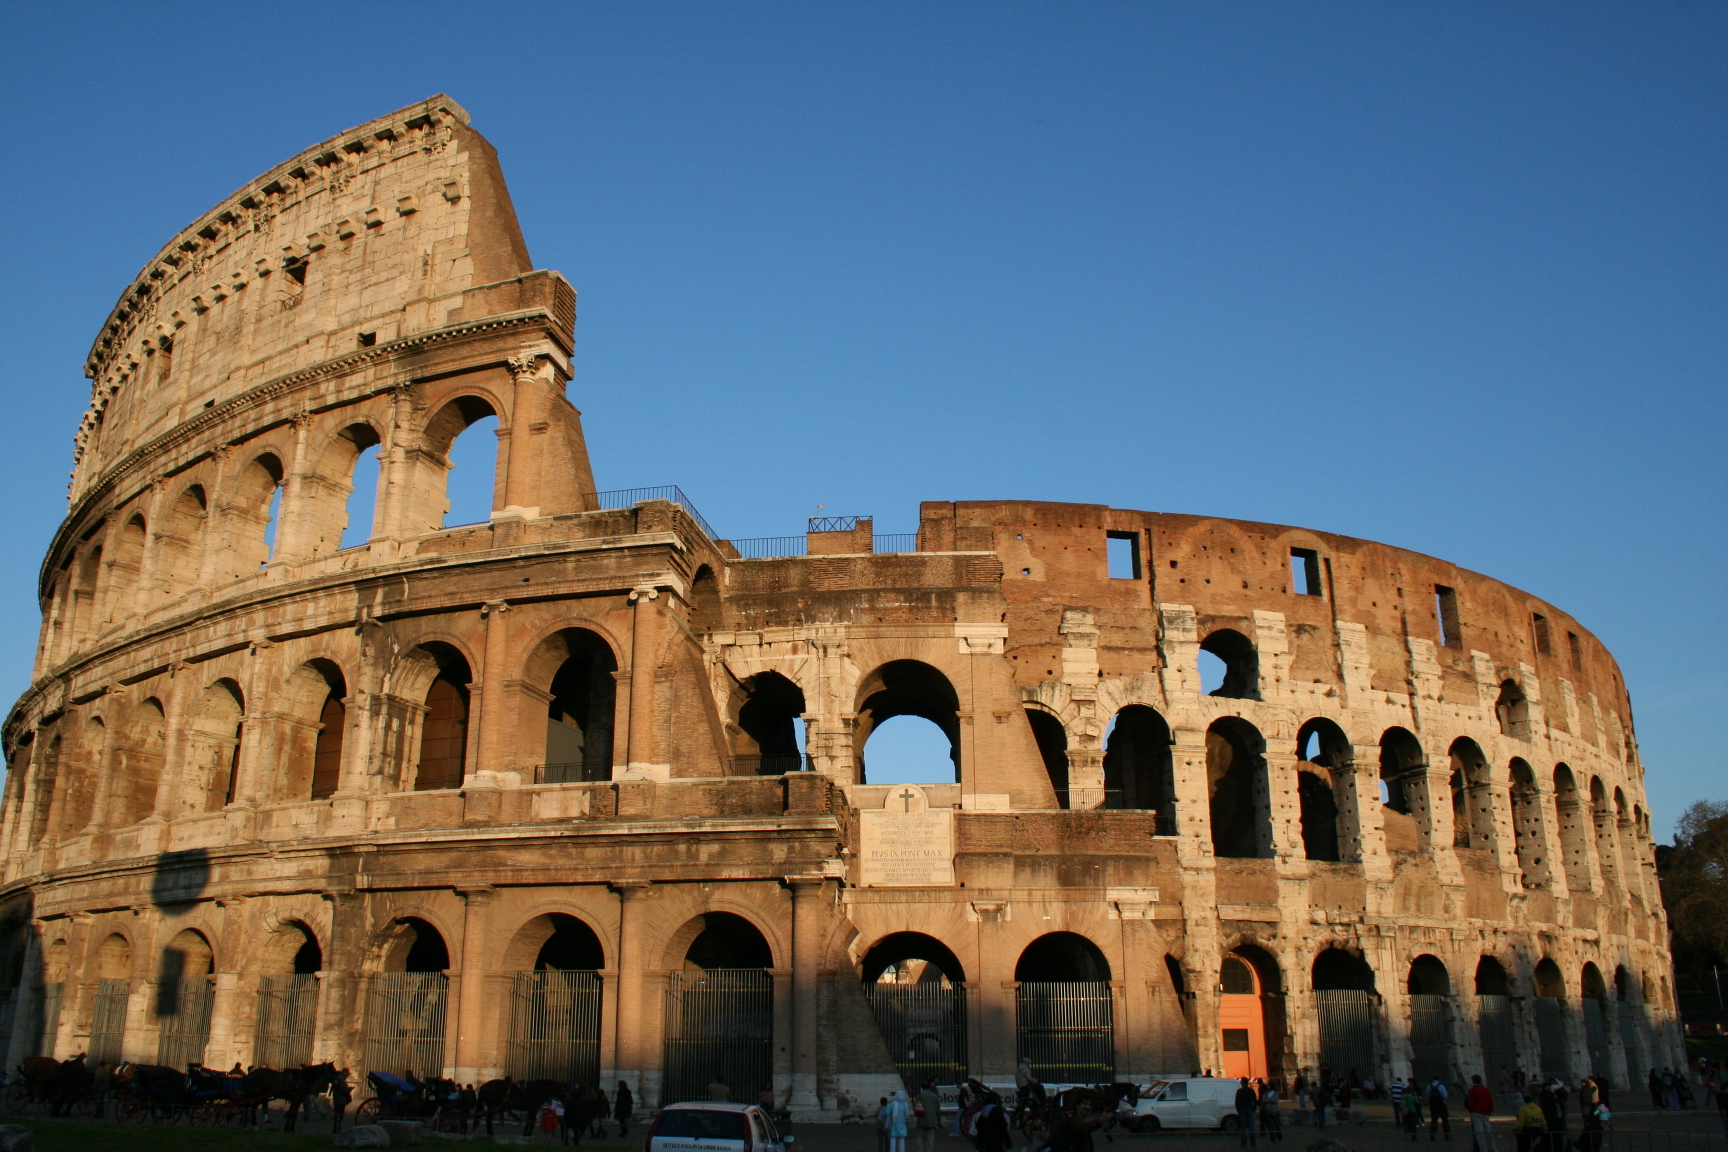 Colosseum
